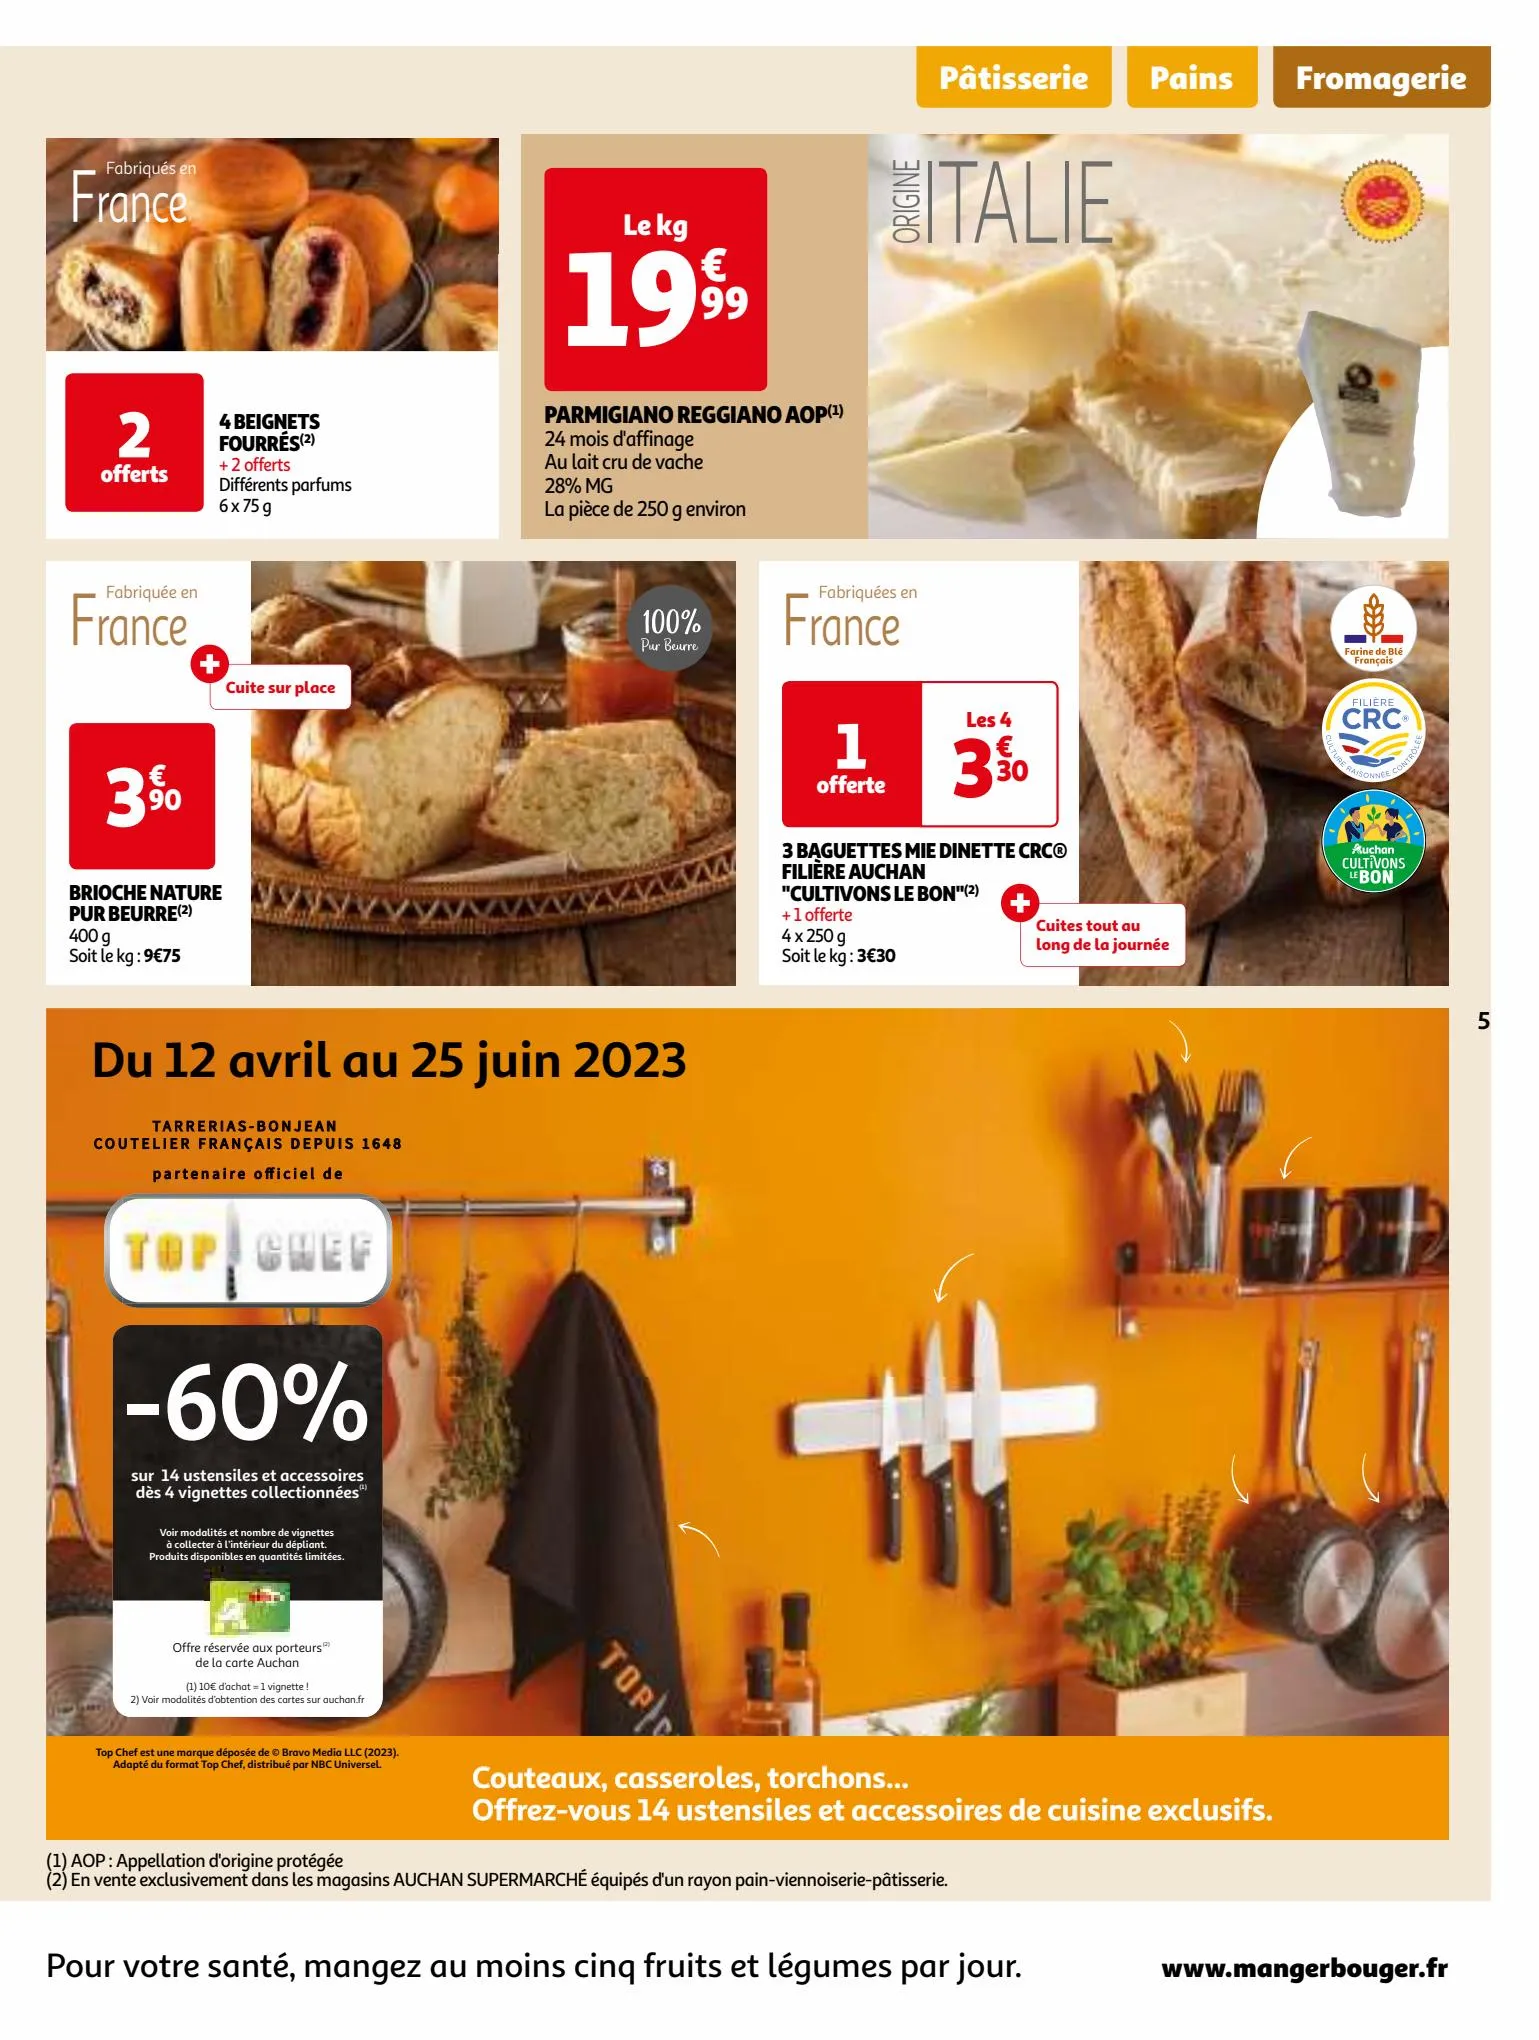 Catalogue Vos produits laitiers à petits prix !, page 00005